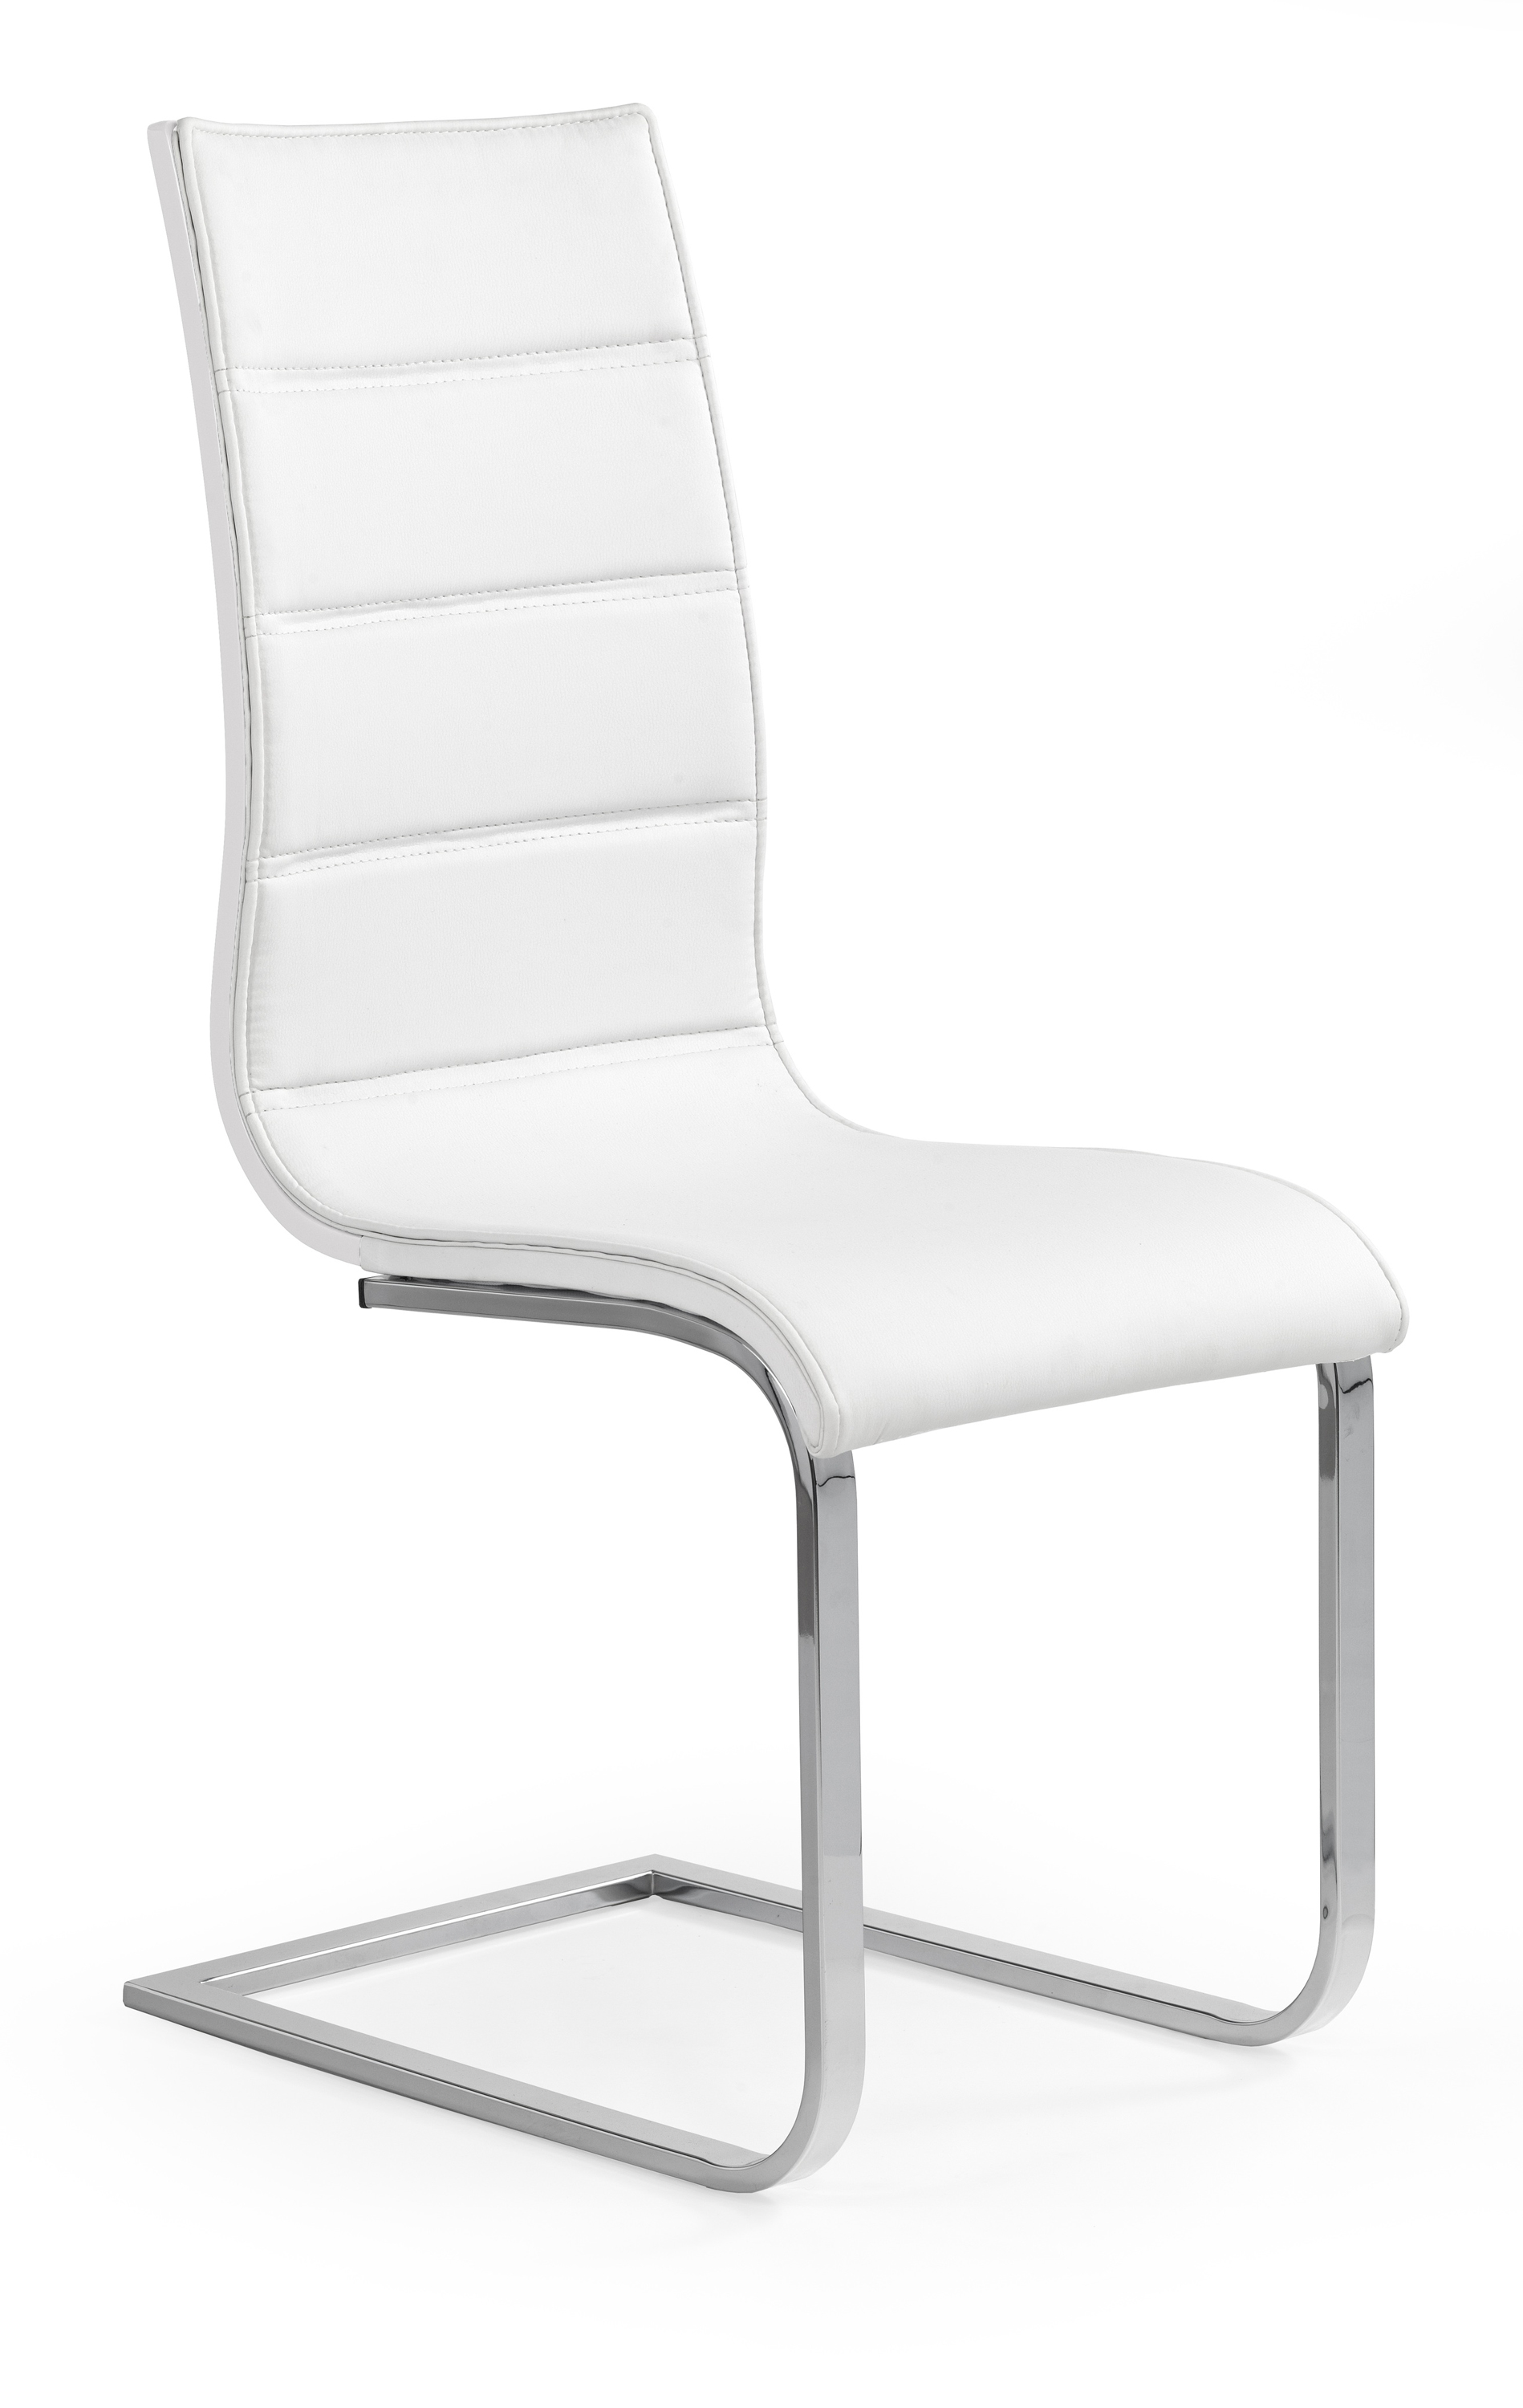 Židle K104 - bílá Židle k104 - biale